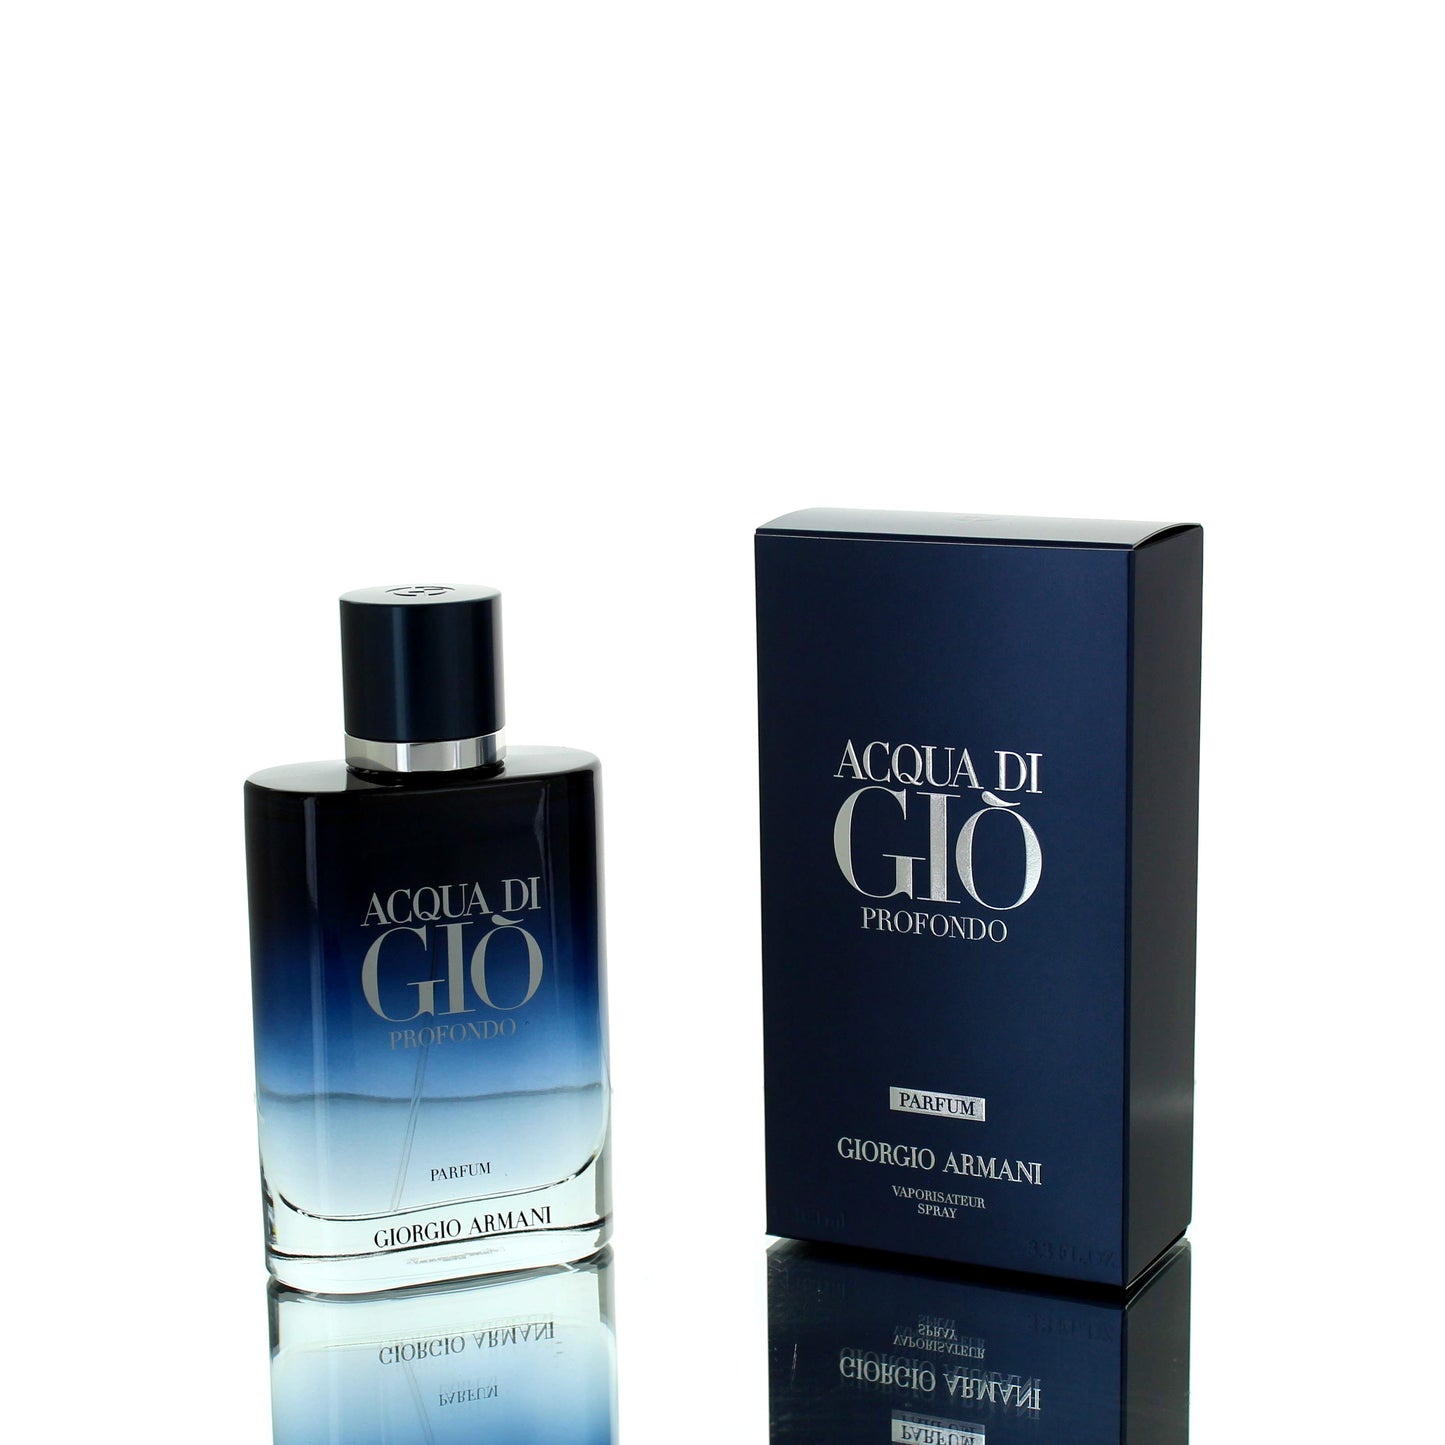 Giorgio Armani Acqua Di Gio Profondo Parfum Edition